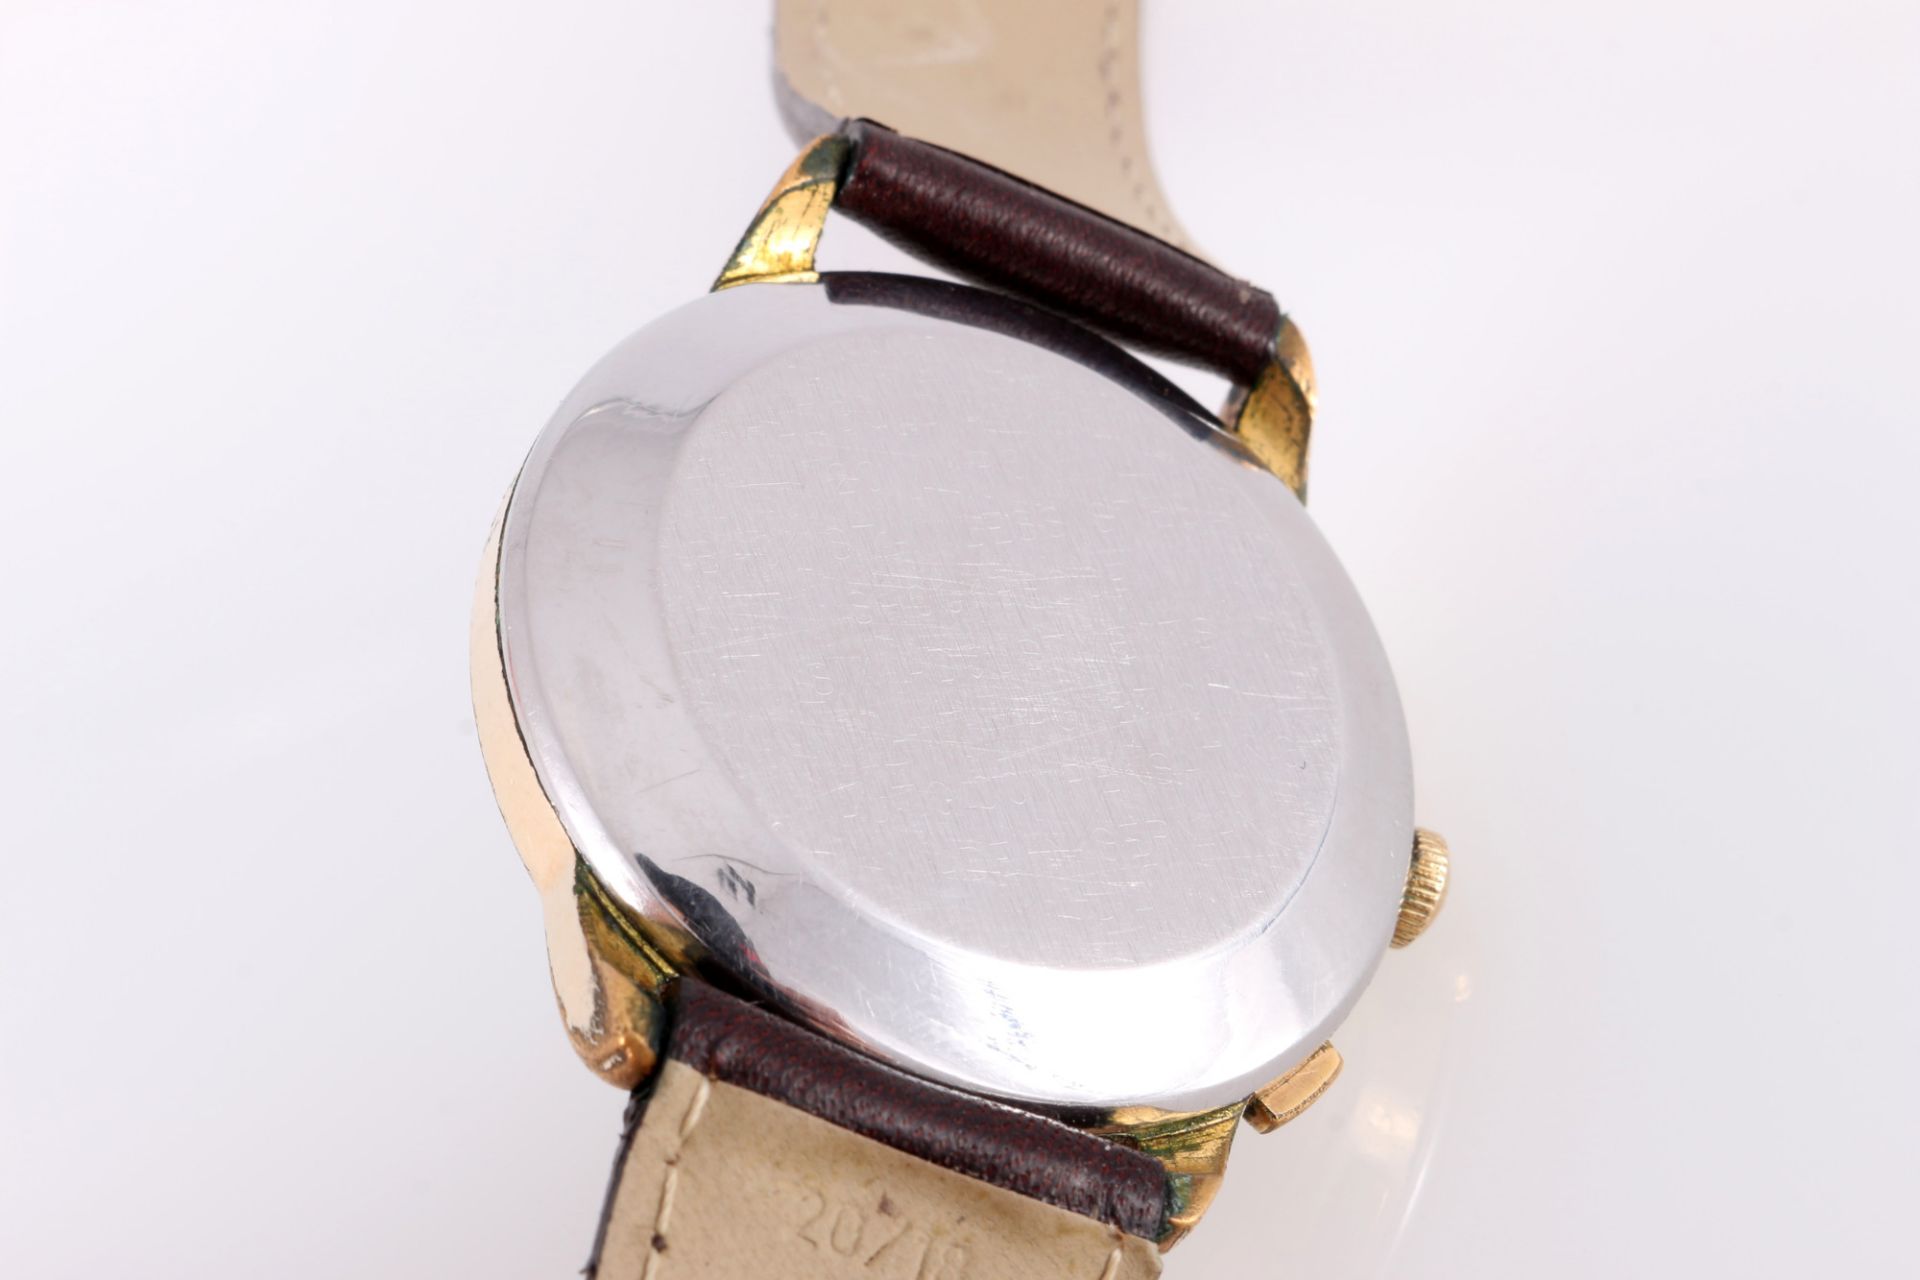 Hanhart men's aviator chronograph wrist watch, Herren Fliegerchronograph, - Image 6 of 7